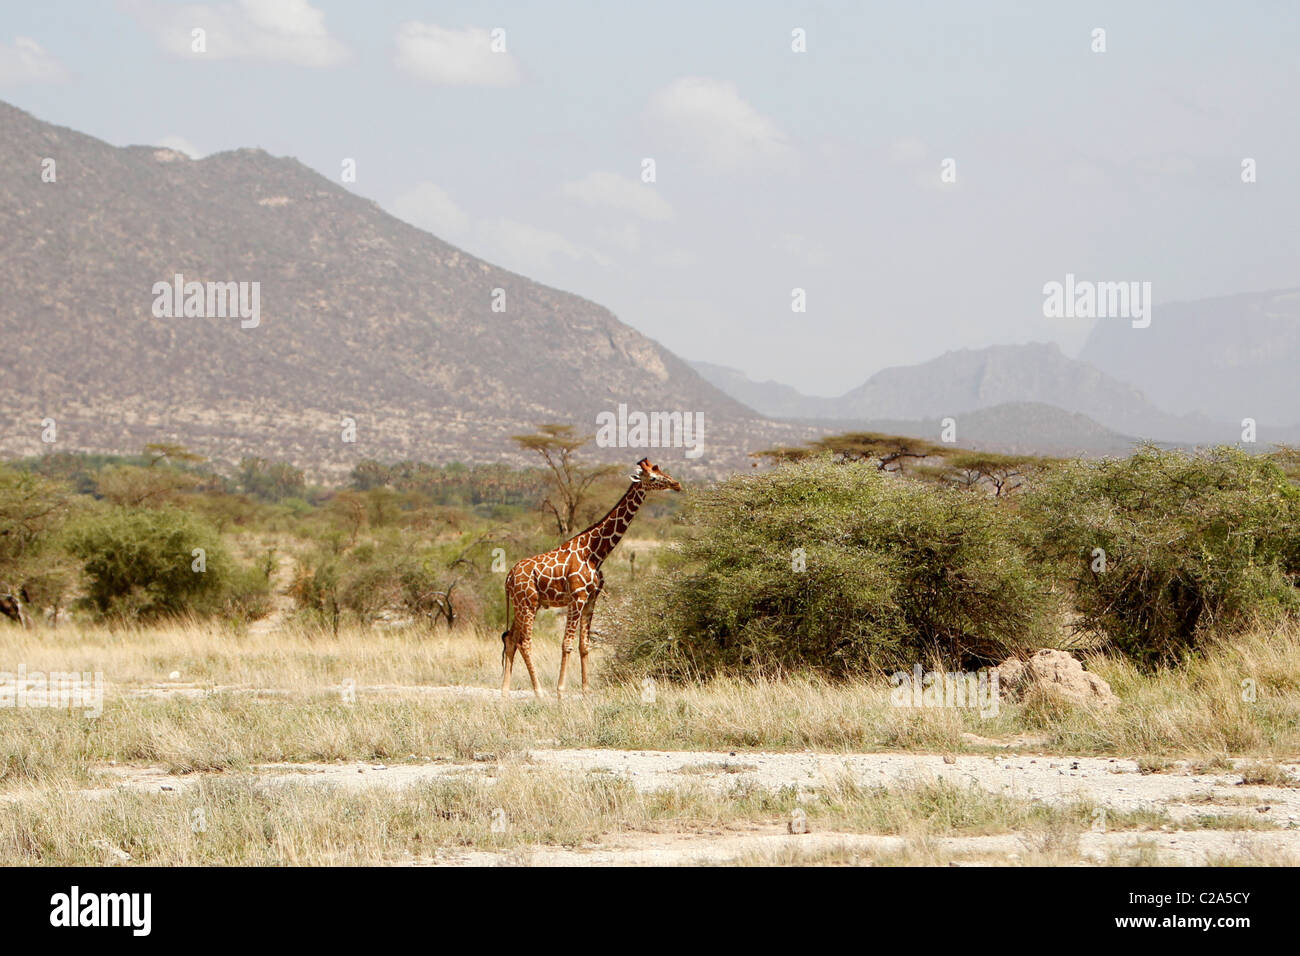 A Reticulated Giraffe in the Samburu National Reserve, Kenya Stock Photo